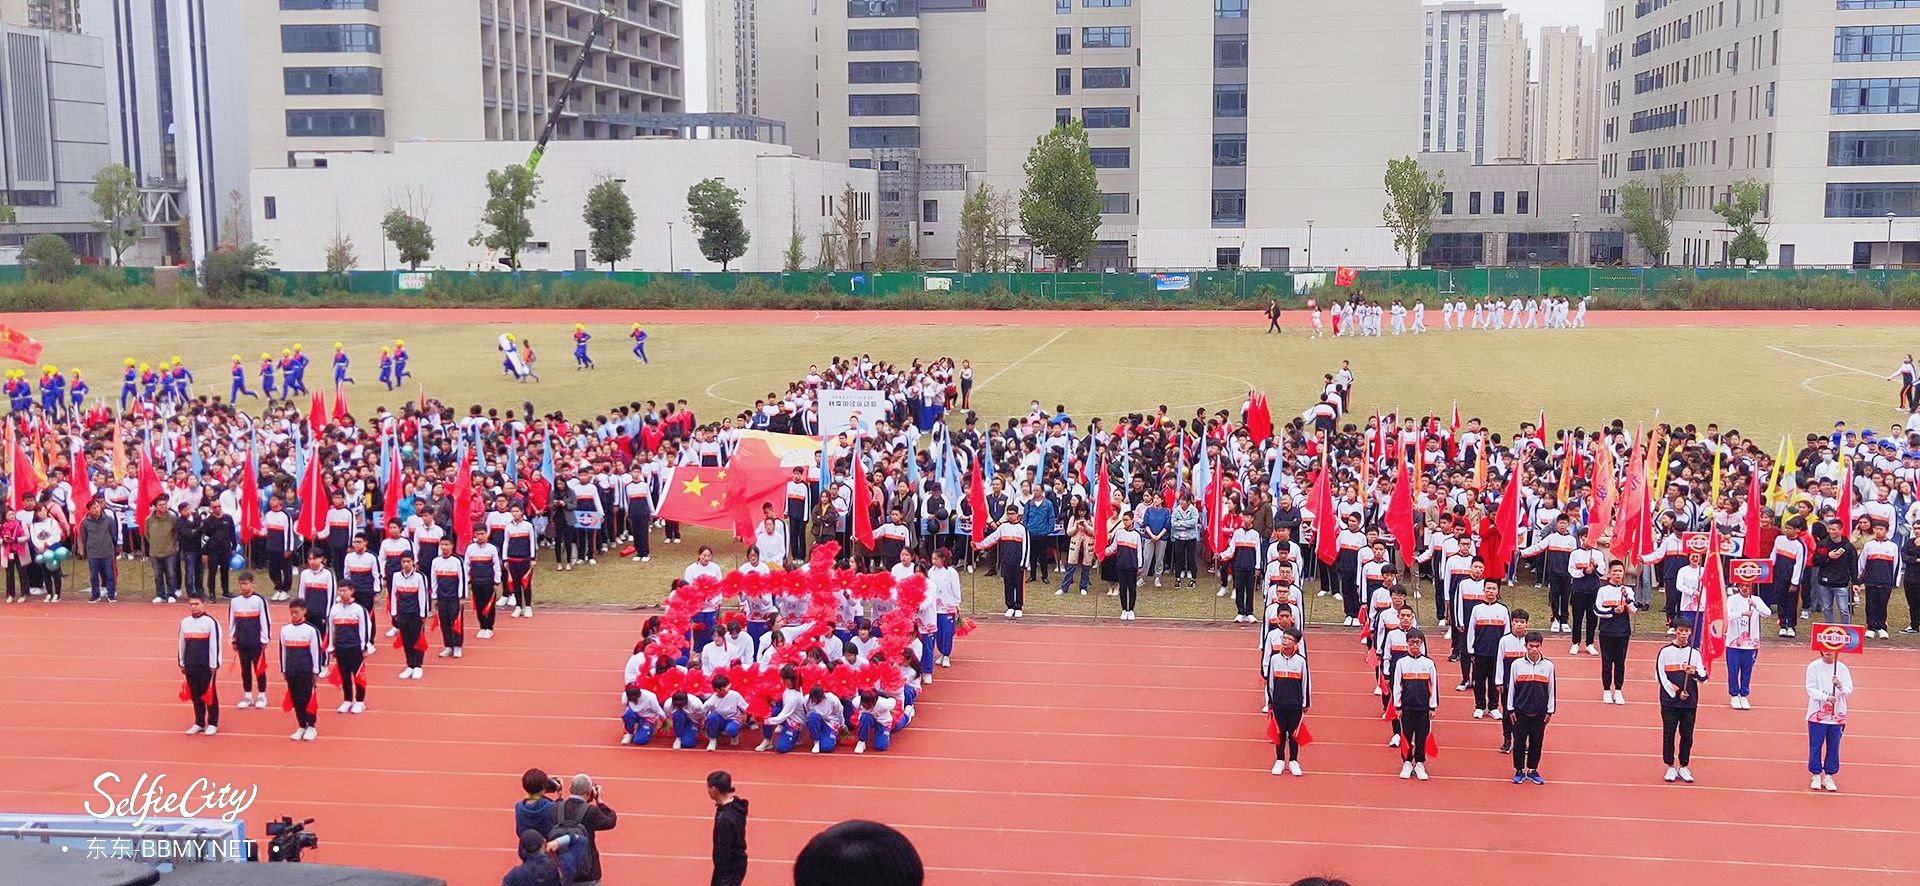 金东浩成长日记在38中学的最后一届校运会照片SelfieCity_20211112101212_org.jpg